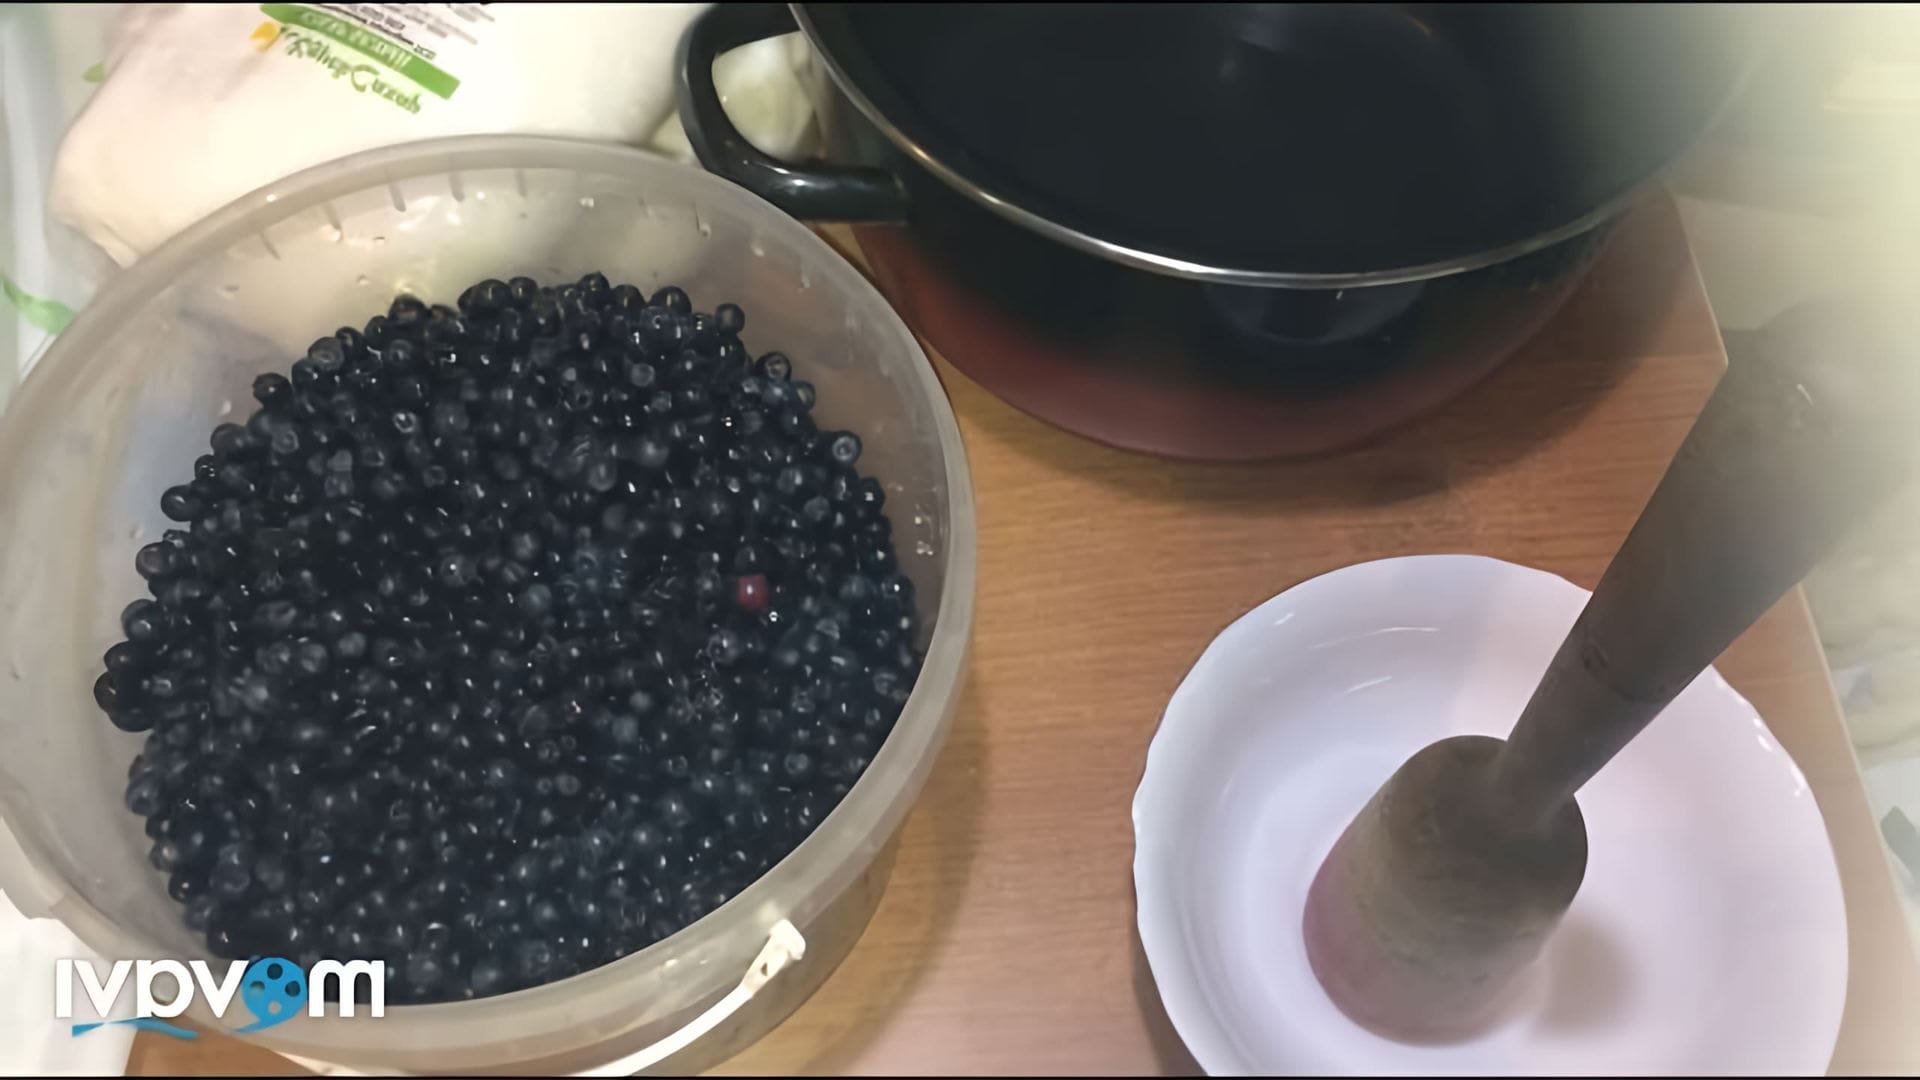 В этом видео демонстрируется пятый способ заготовки черники на зиму - толченая черника с сахаром